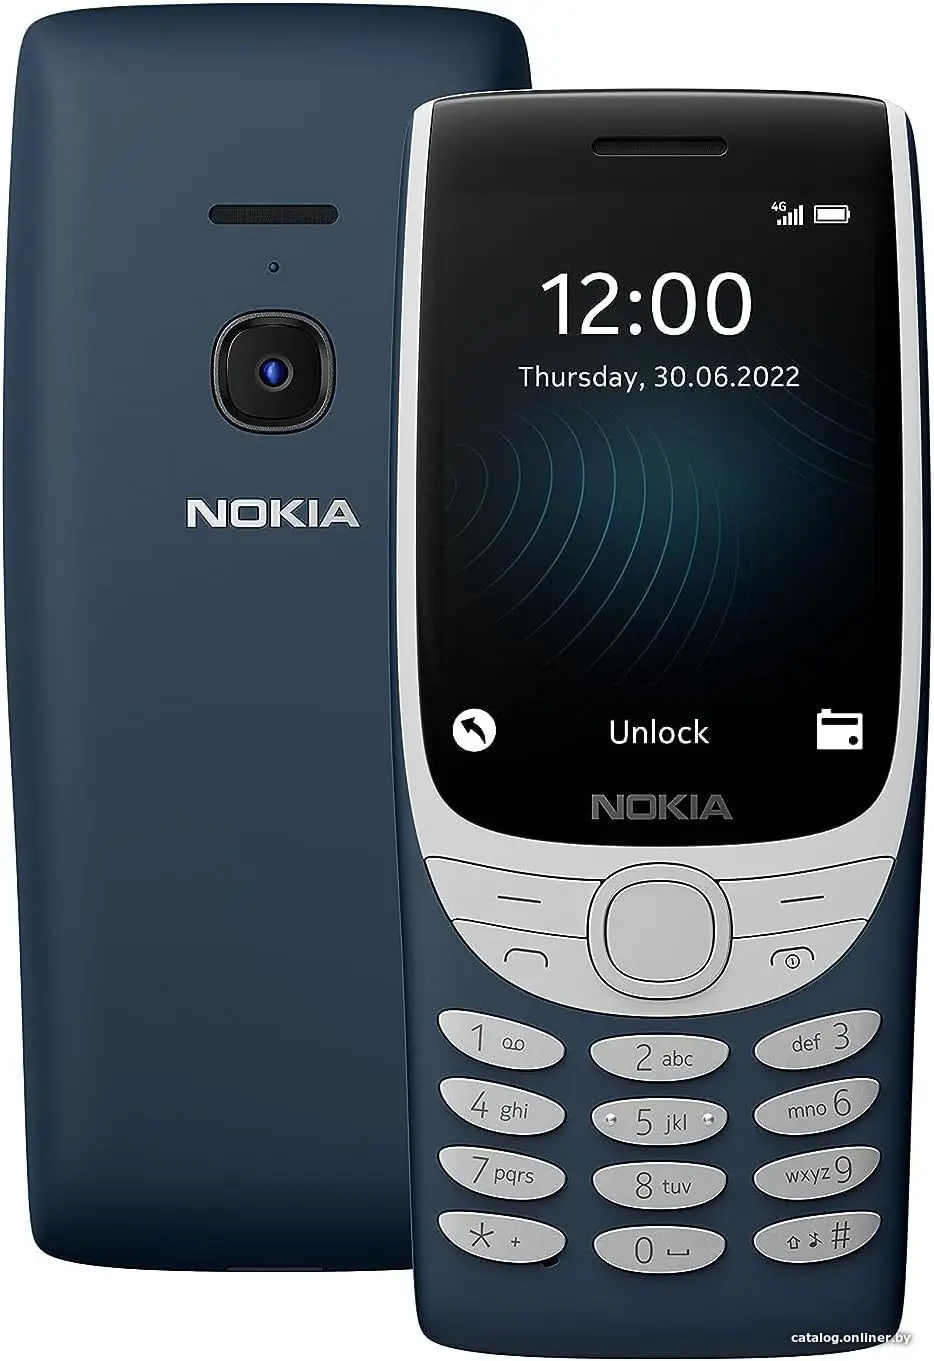 Купить Мобильный телефон NOKIA 8210 4G ТА-1489 DS ЕАС UA ВLUE, цена, опт и розница